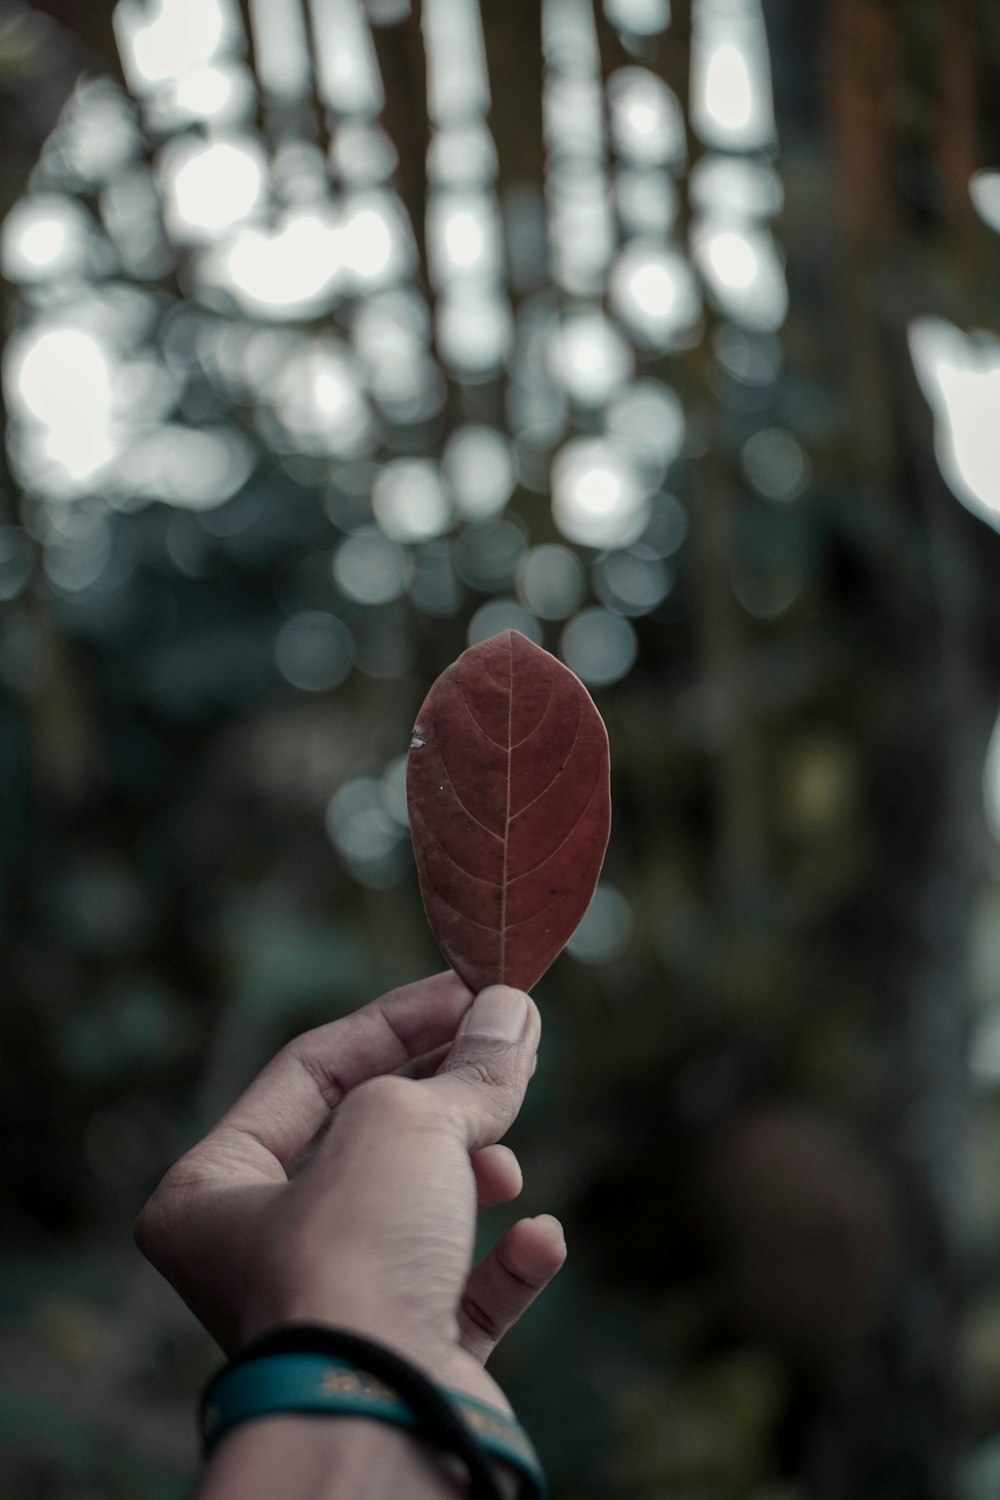 마른 잎을 들고 있는 사람의 보케 사진